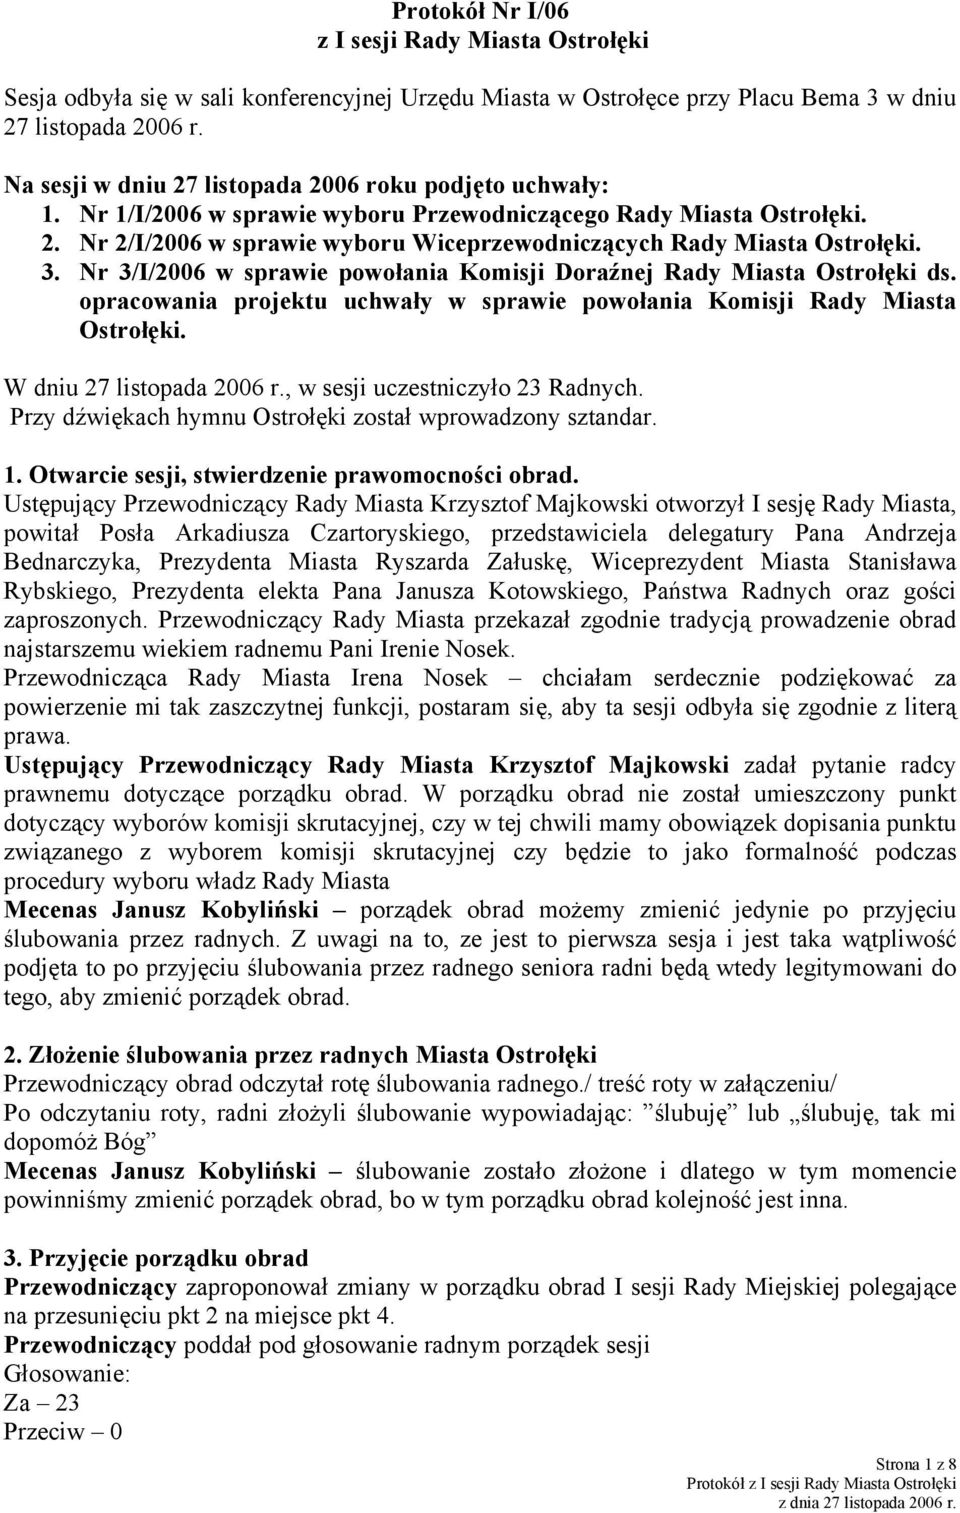 3. Nr 3/I/2006 w sprawie powołania Komisji Doraźnej Rady Miasta Ostrołęki ds. opracowania projektu uchwały w sprawie powołania Komisji Rady Miasta Ostrołęki. W dniu 27 listopada 2006 r.